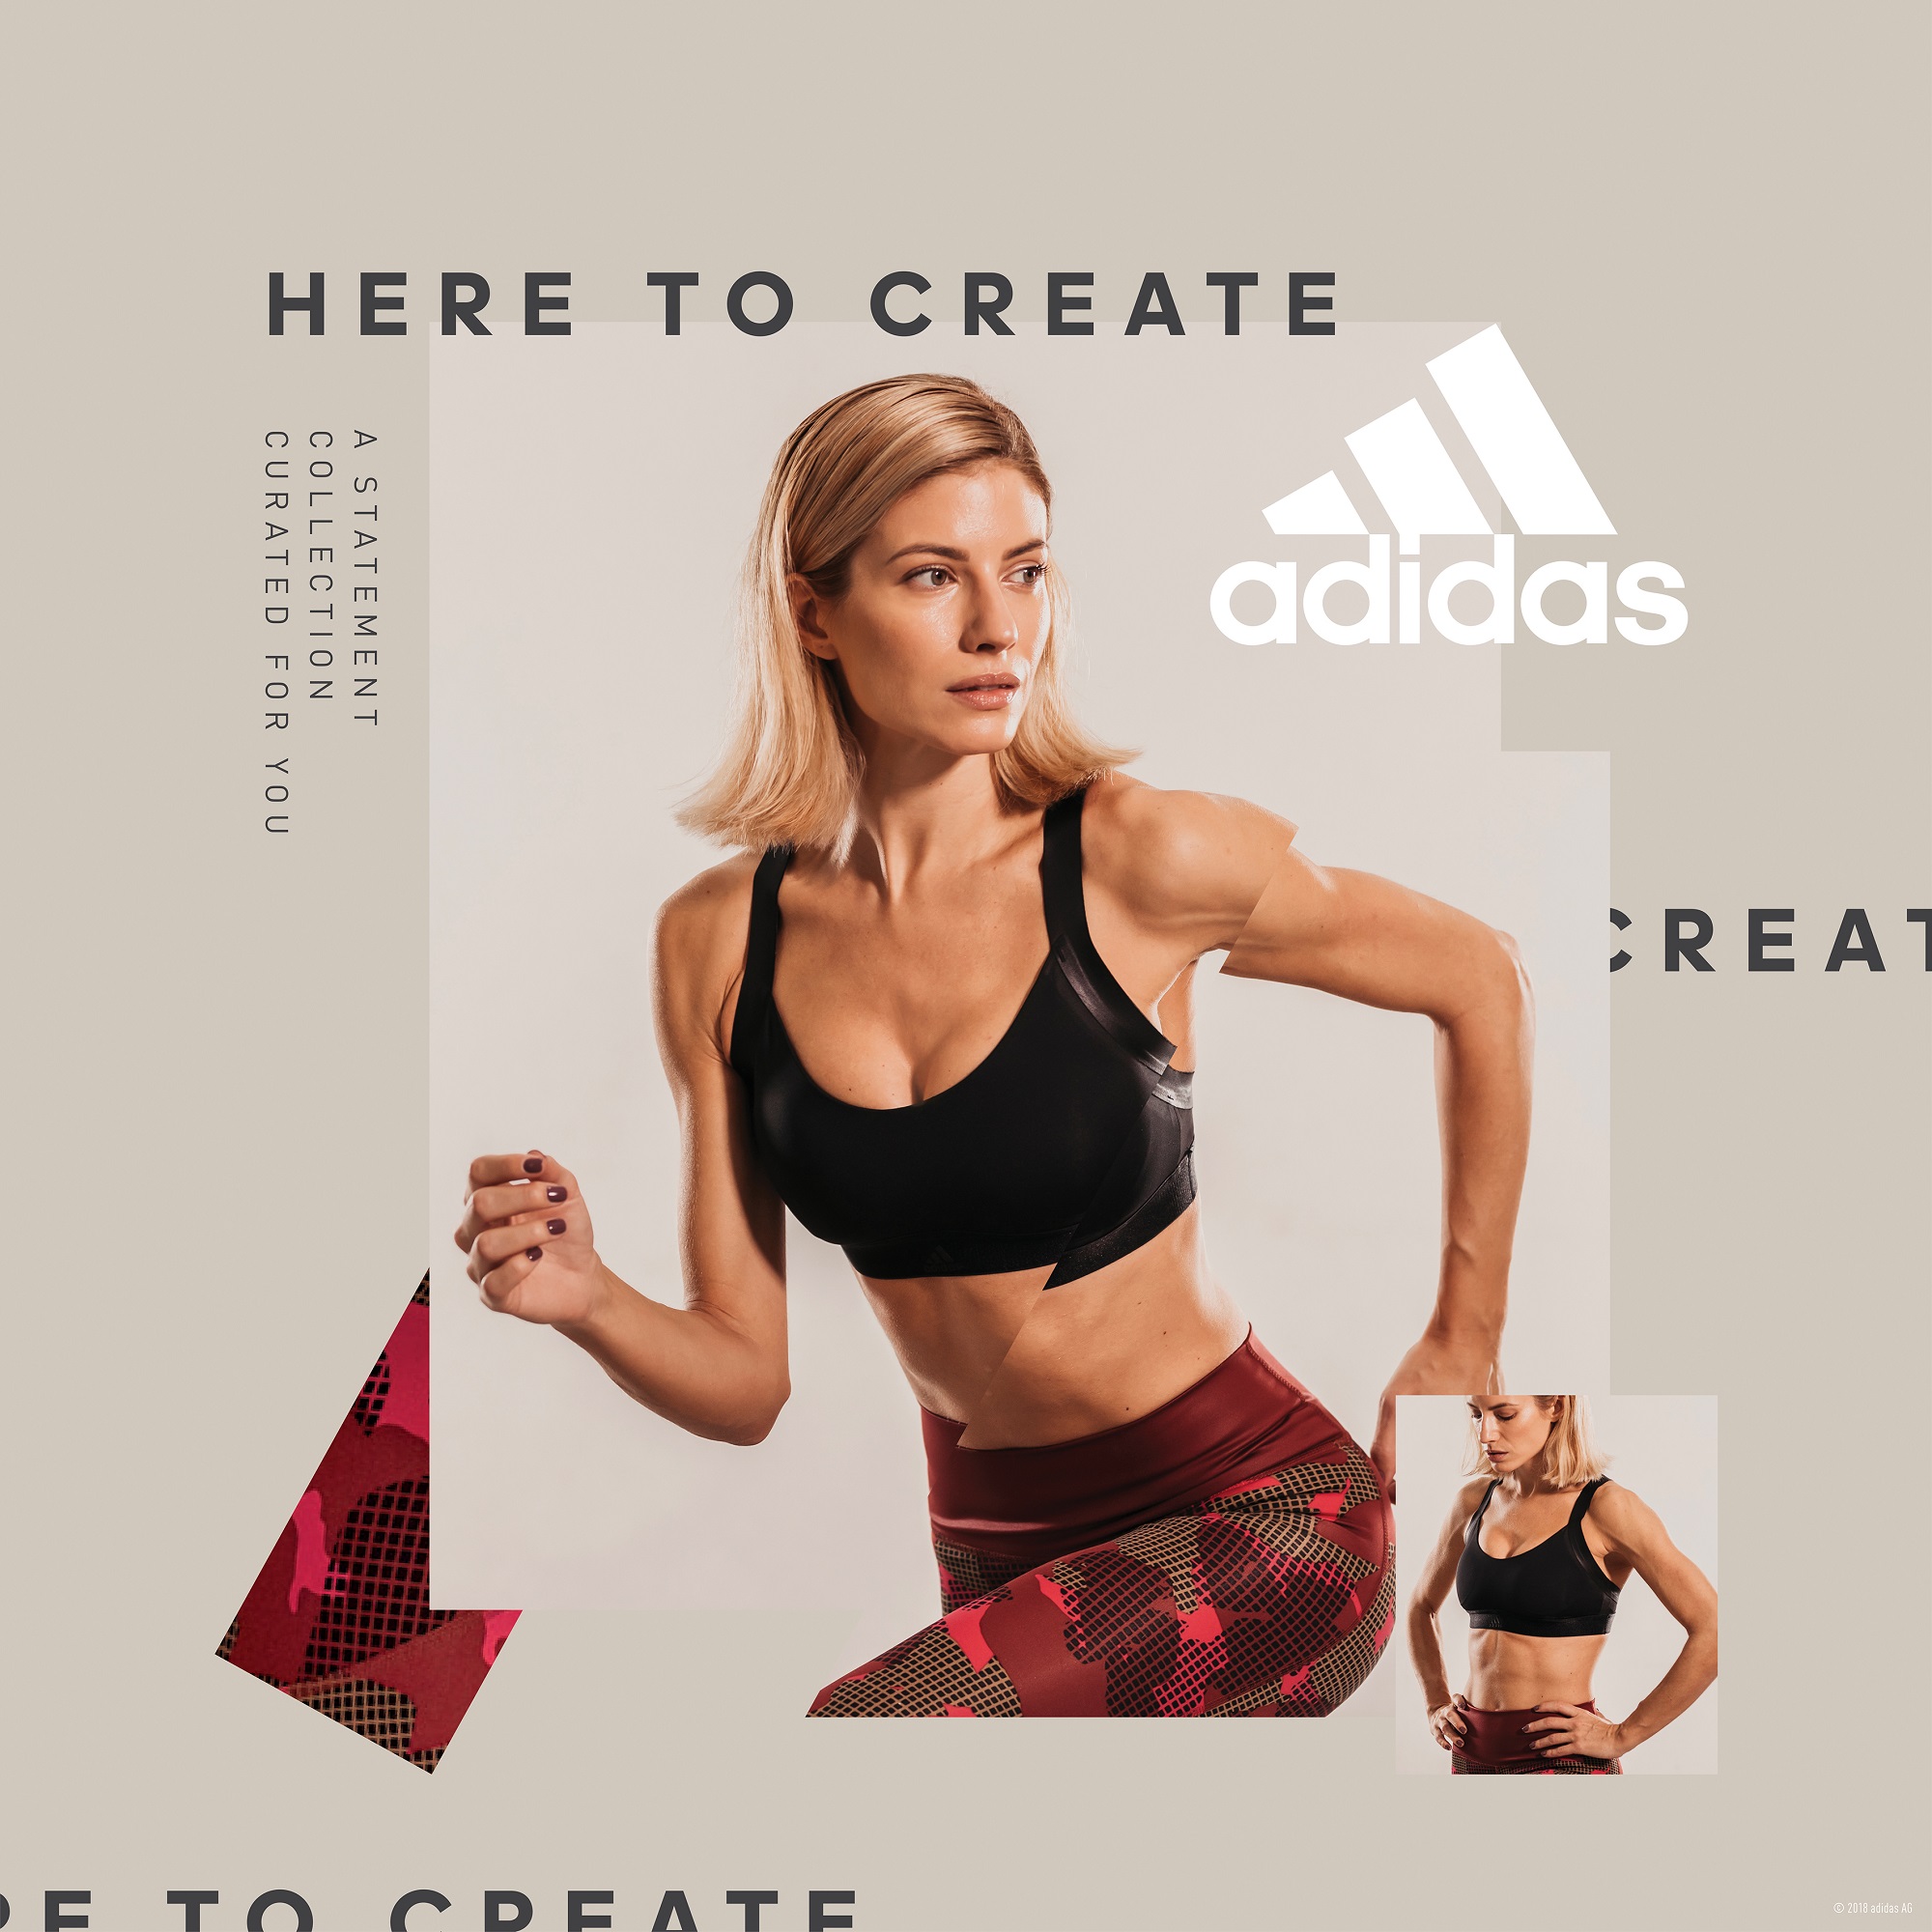 Η νέα limited Statement Collection των adidas Women υποστηρίζει τις γυναίκες σε κάθε τους προπόνηση